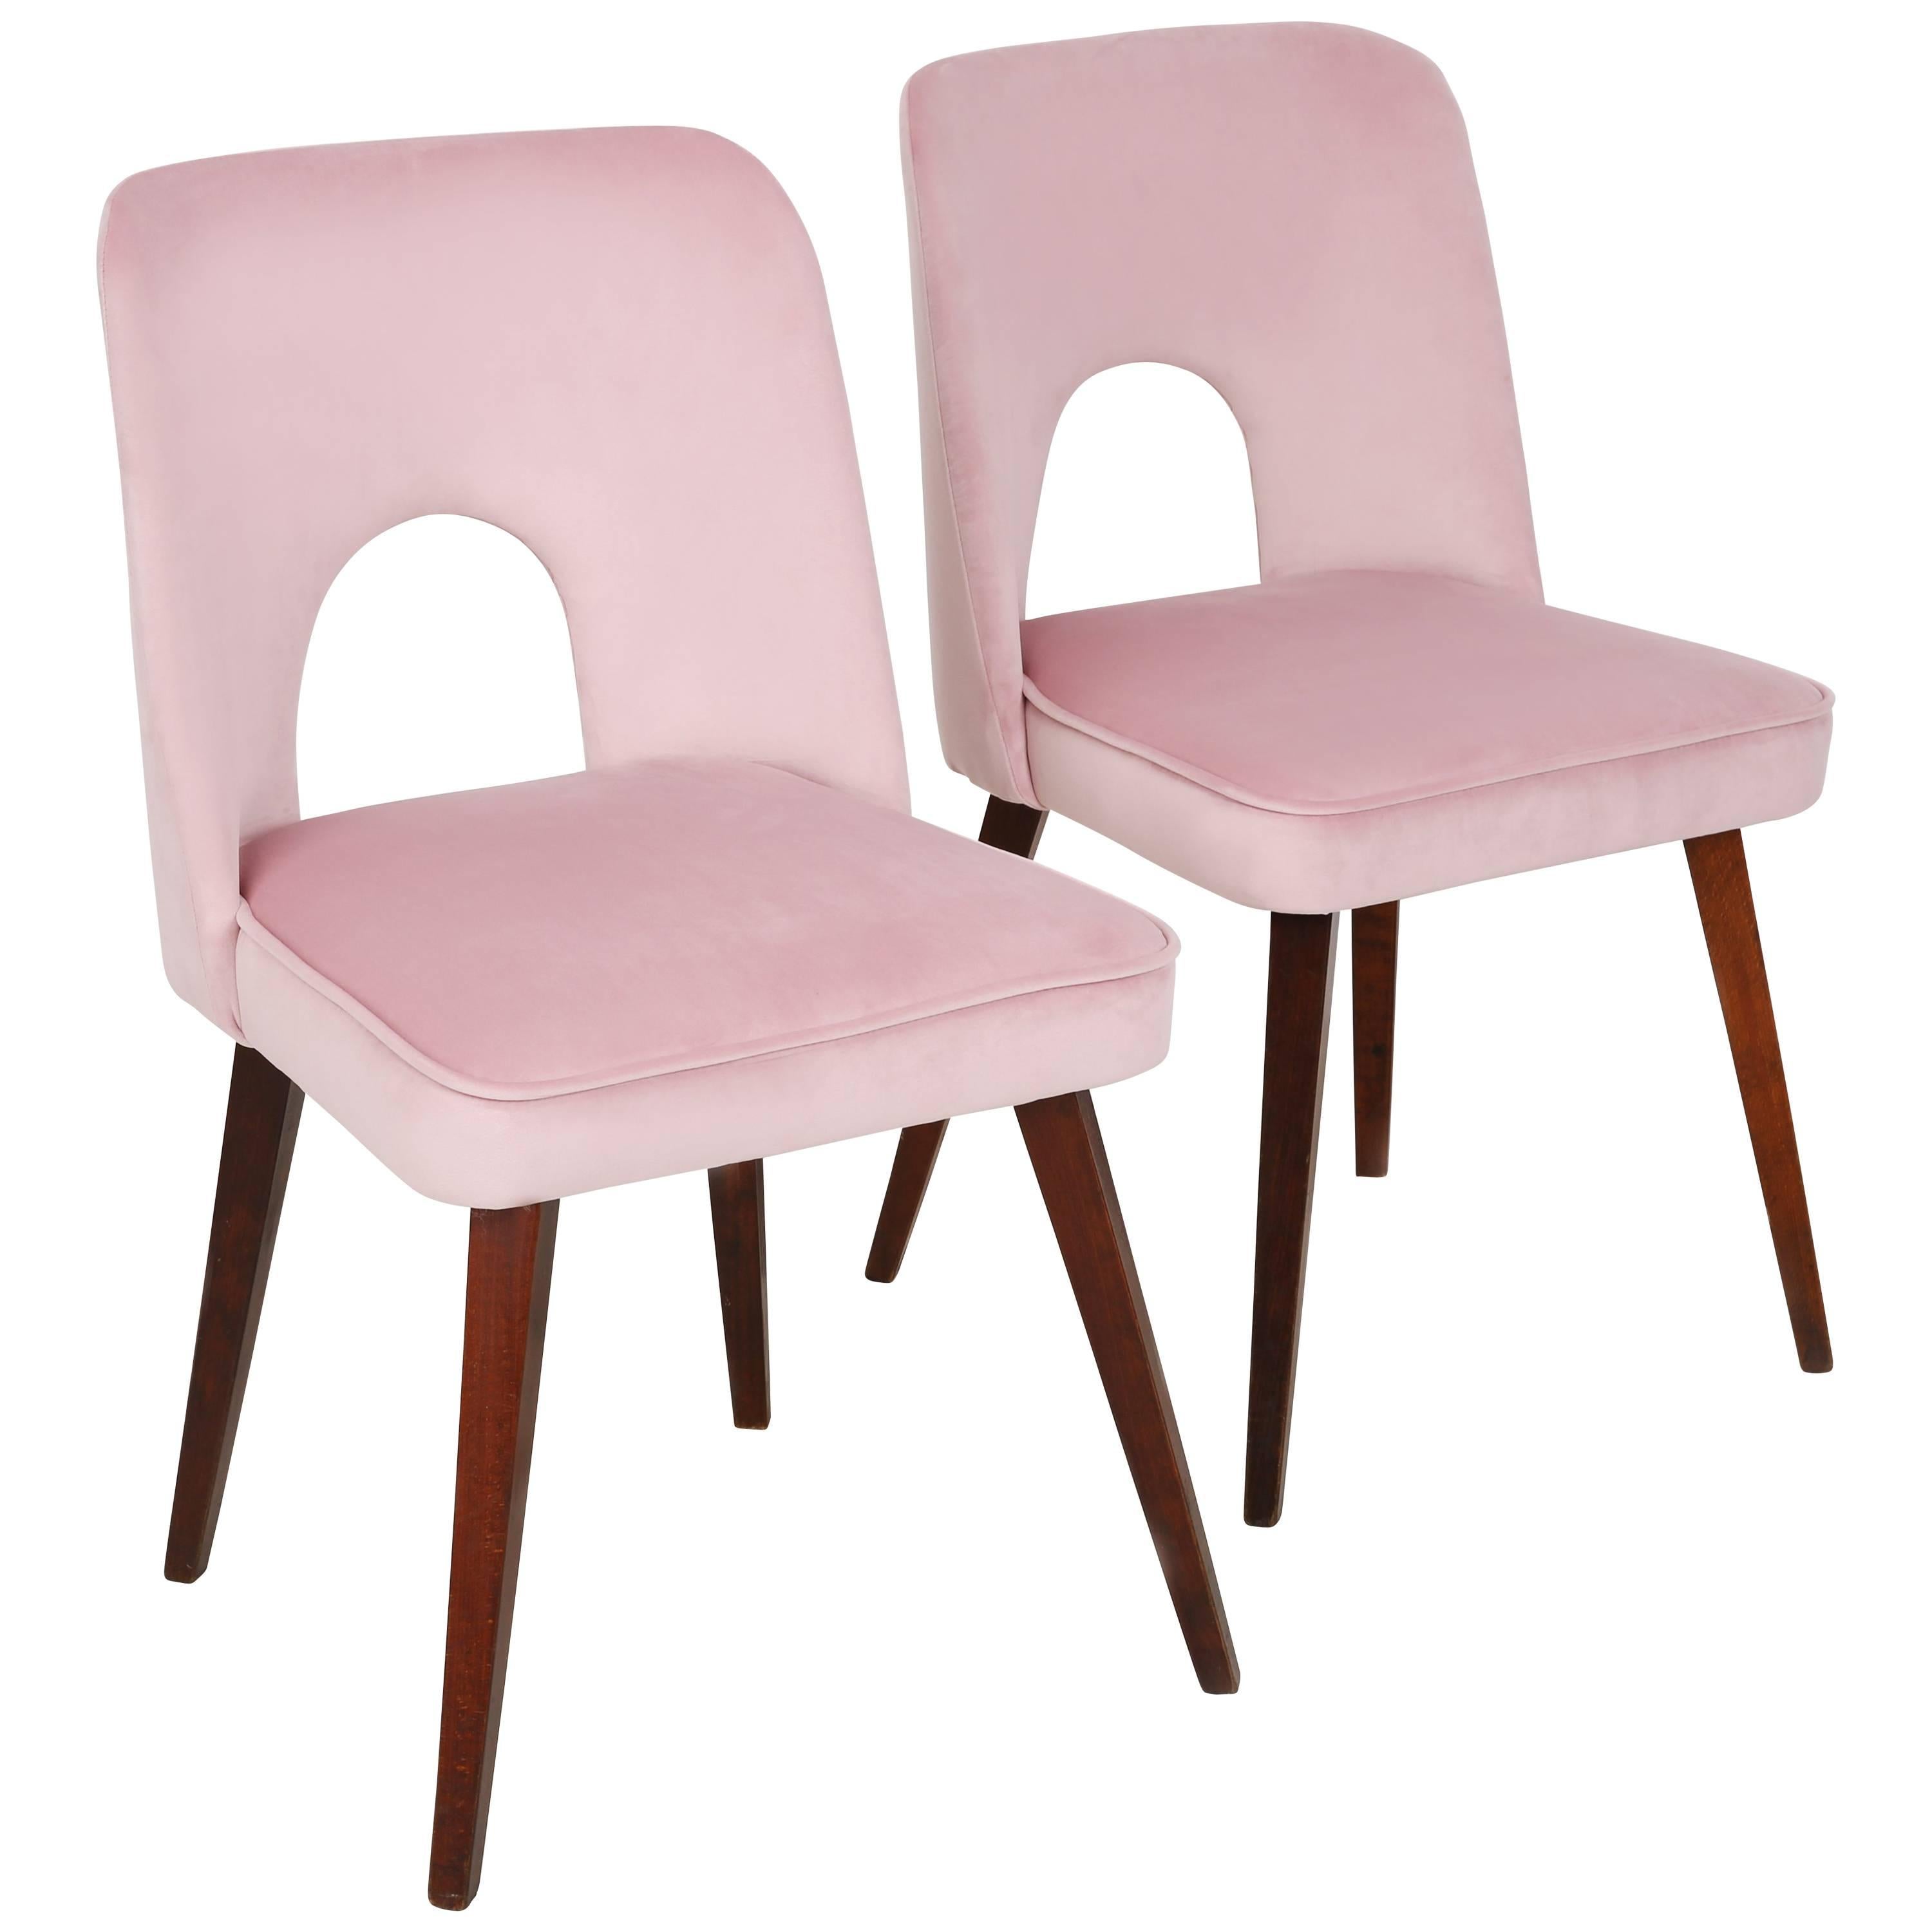 Six magnifiques chaises de type 1020, appelées familièrement 